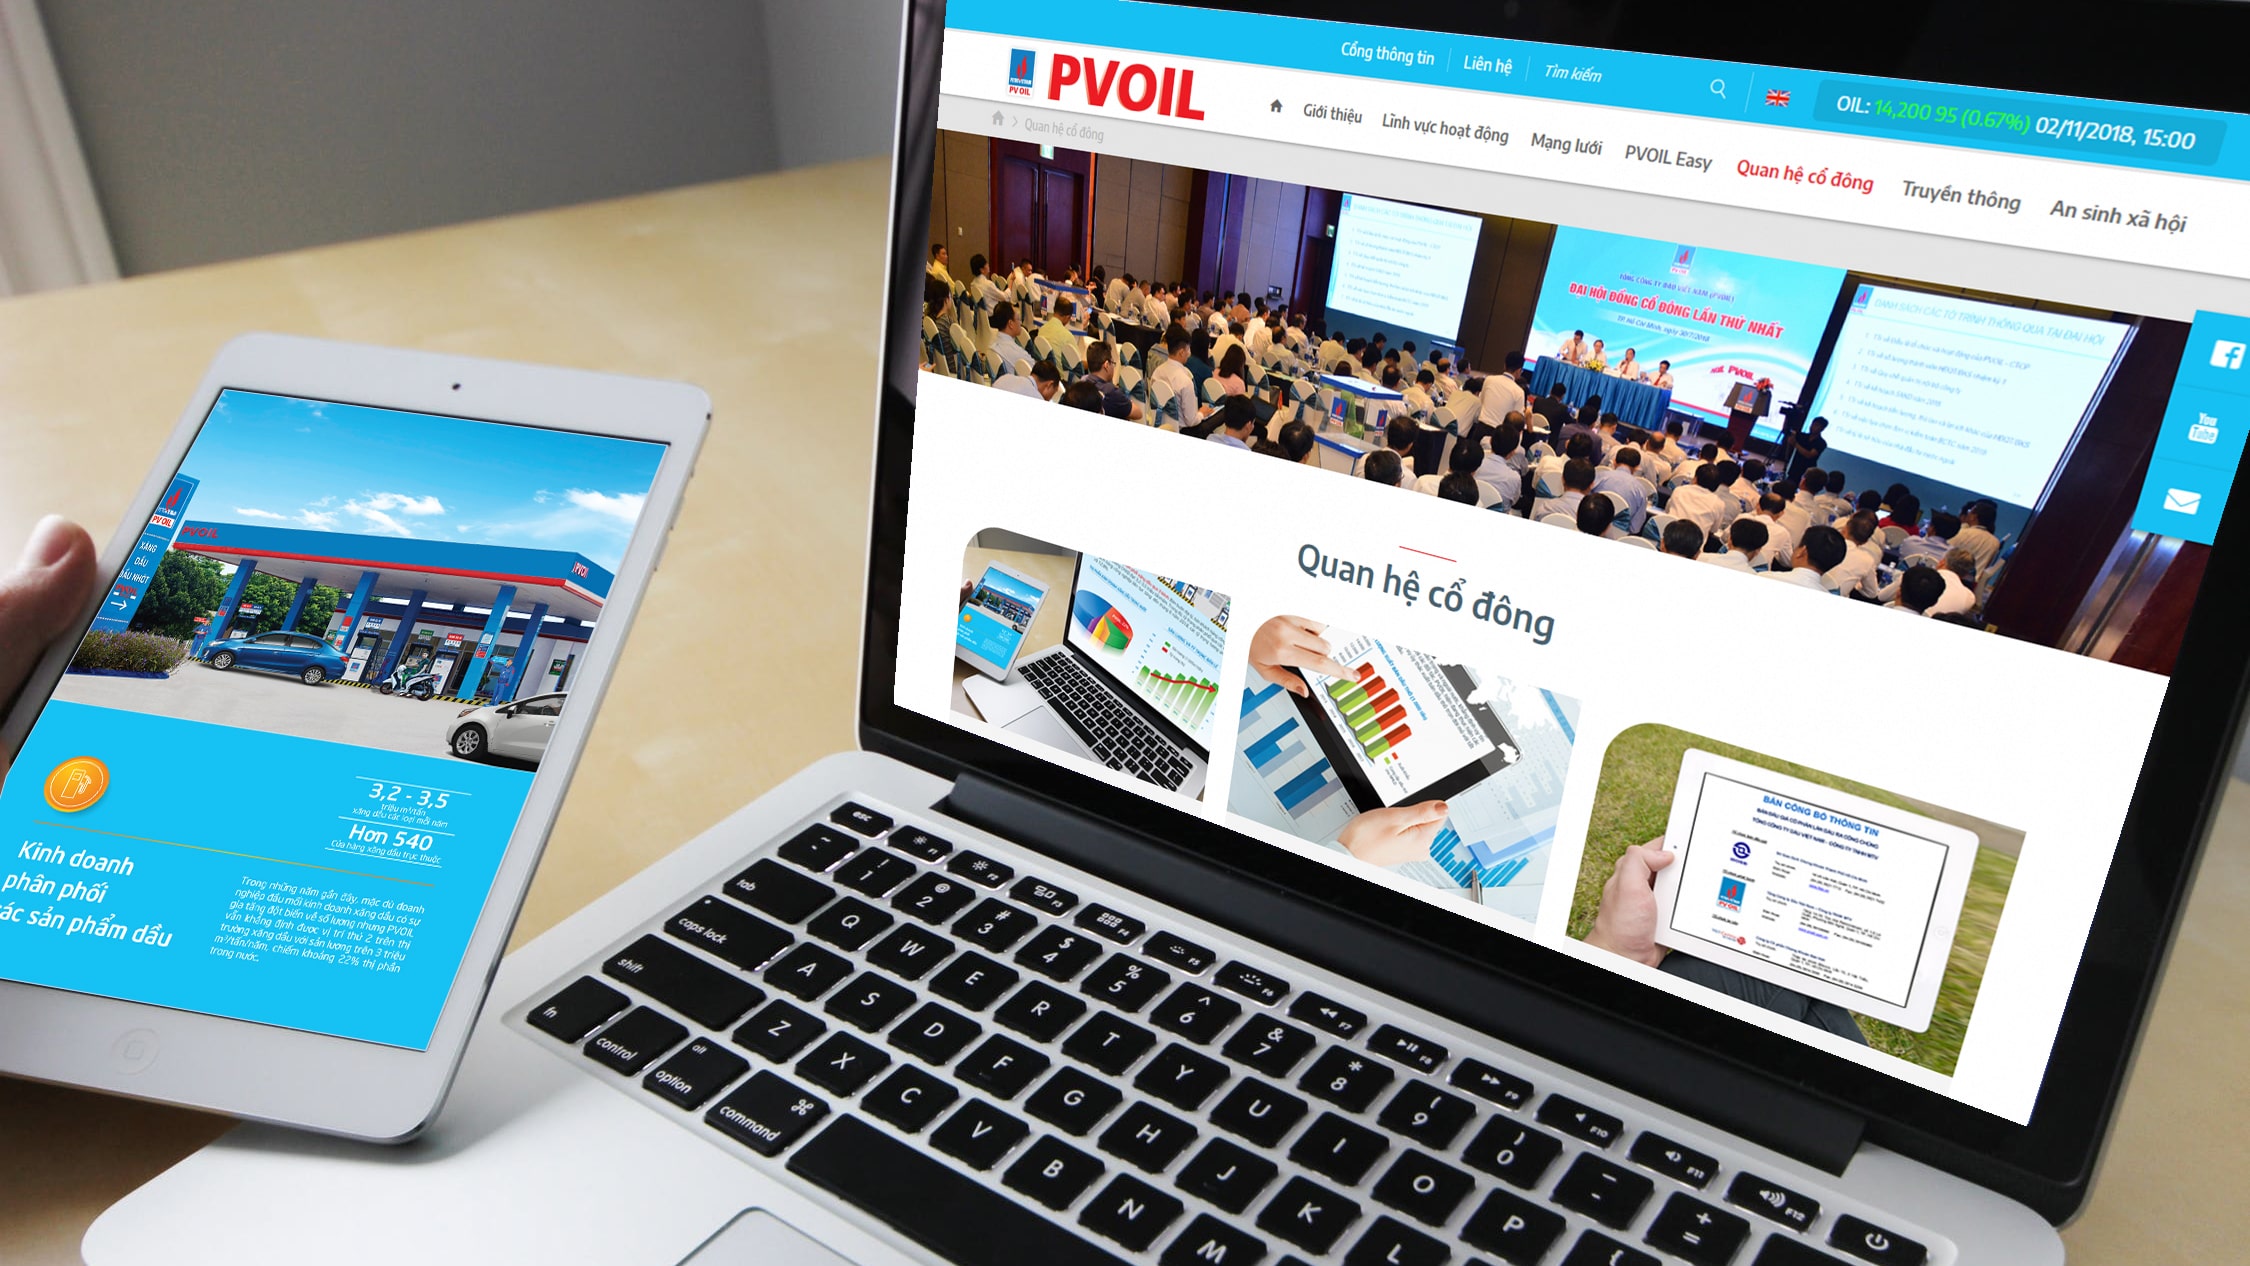 PVOIL thiết kế website phục vụ hoạt động trên sàn chứng khoán ảnh 3